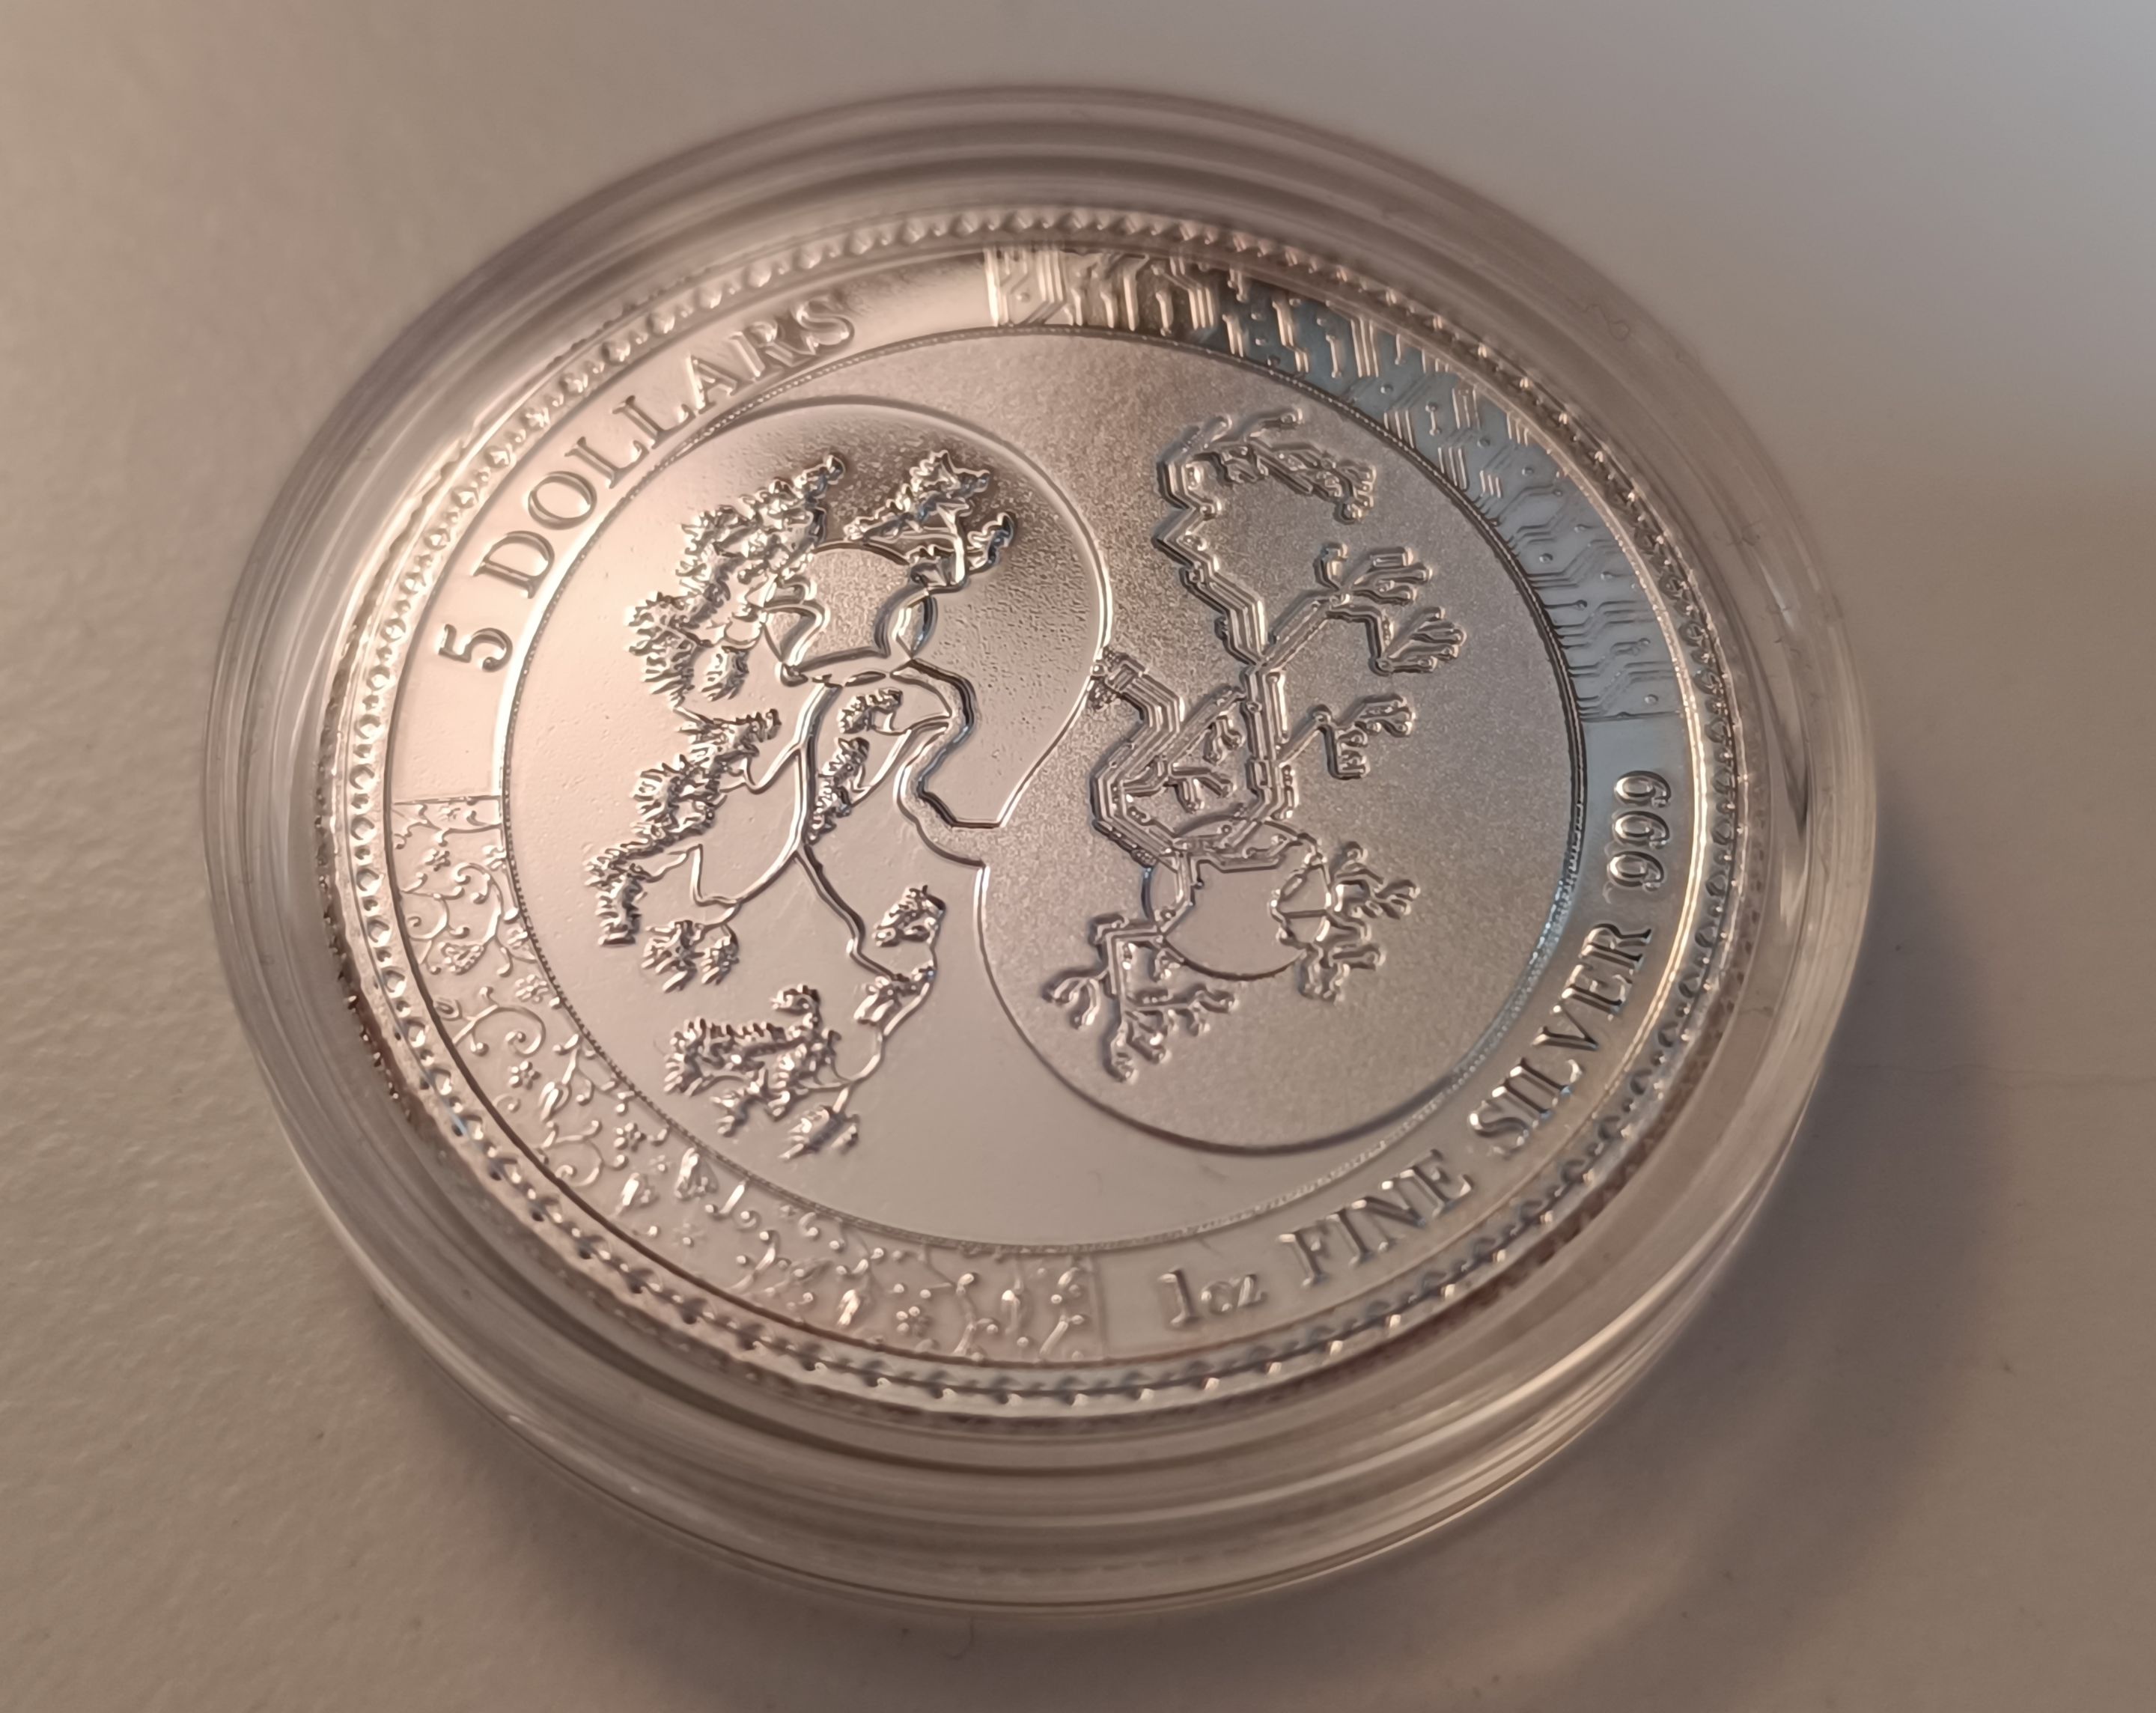 equilibrium 1 oz silver round - 2018 - Pressburg mint (3).jpg